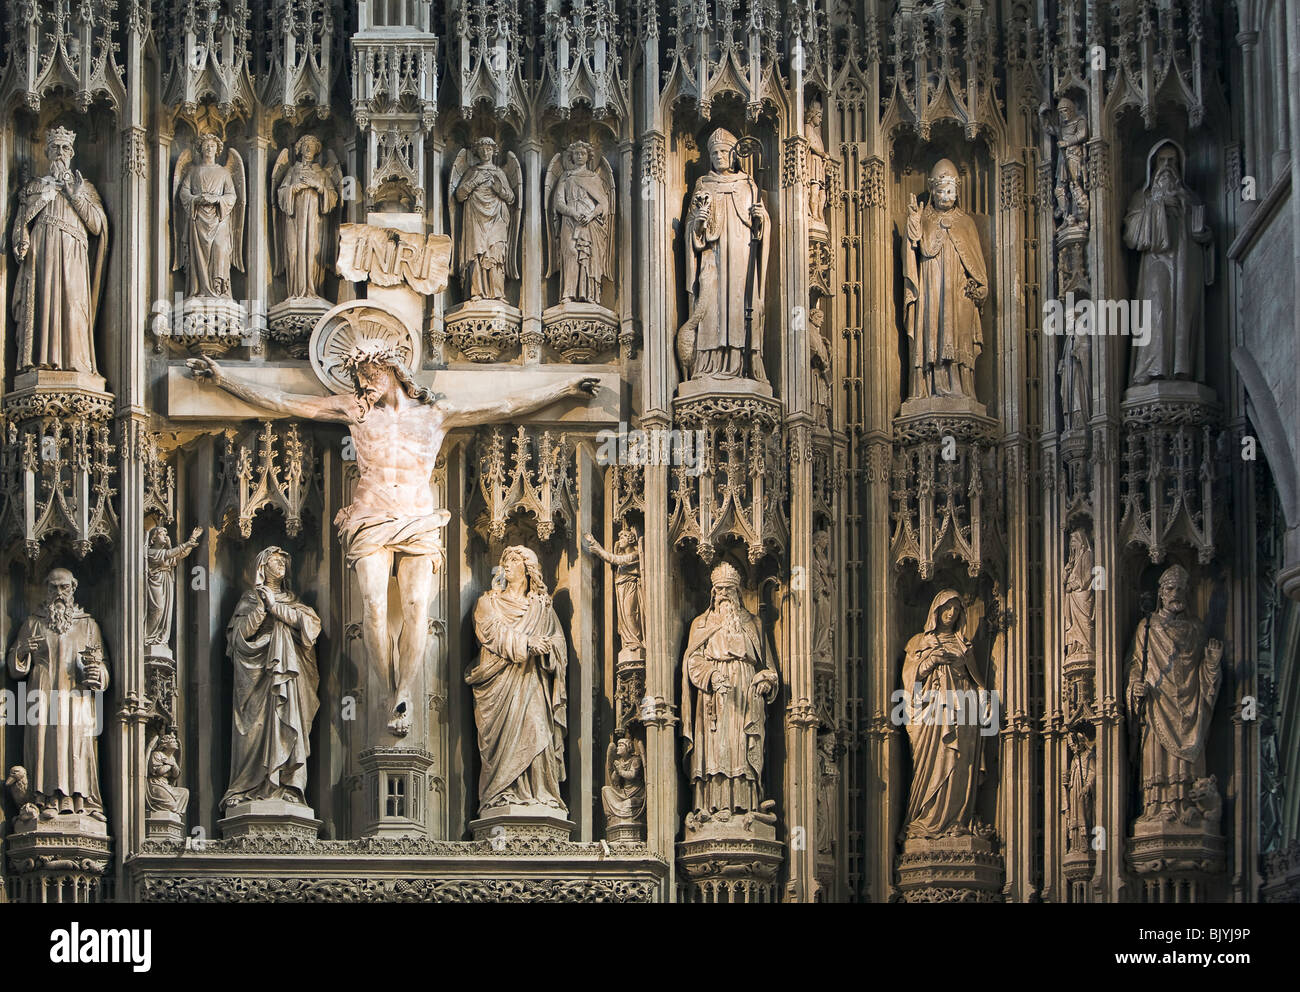 Une photographie de l'abbaye de St Albans Cathédrale de Jésus Christ sur la croix entouré de saints. Banque D'Images